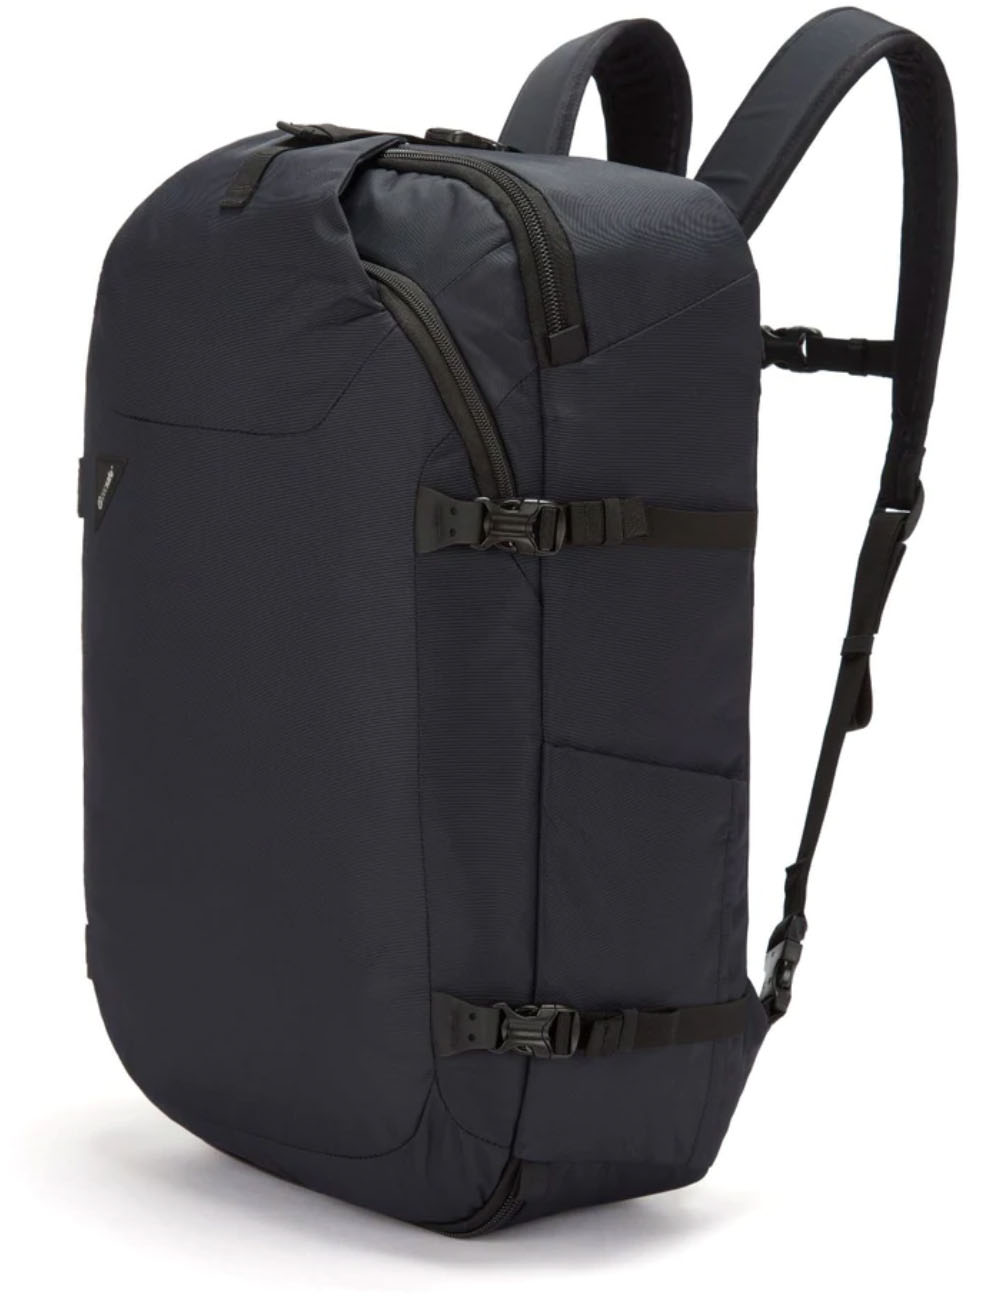 Pacsafe Venturesafe EXP45 travel backpack